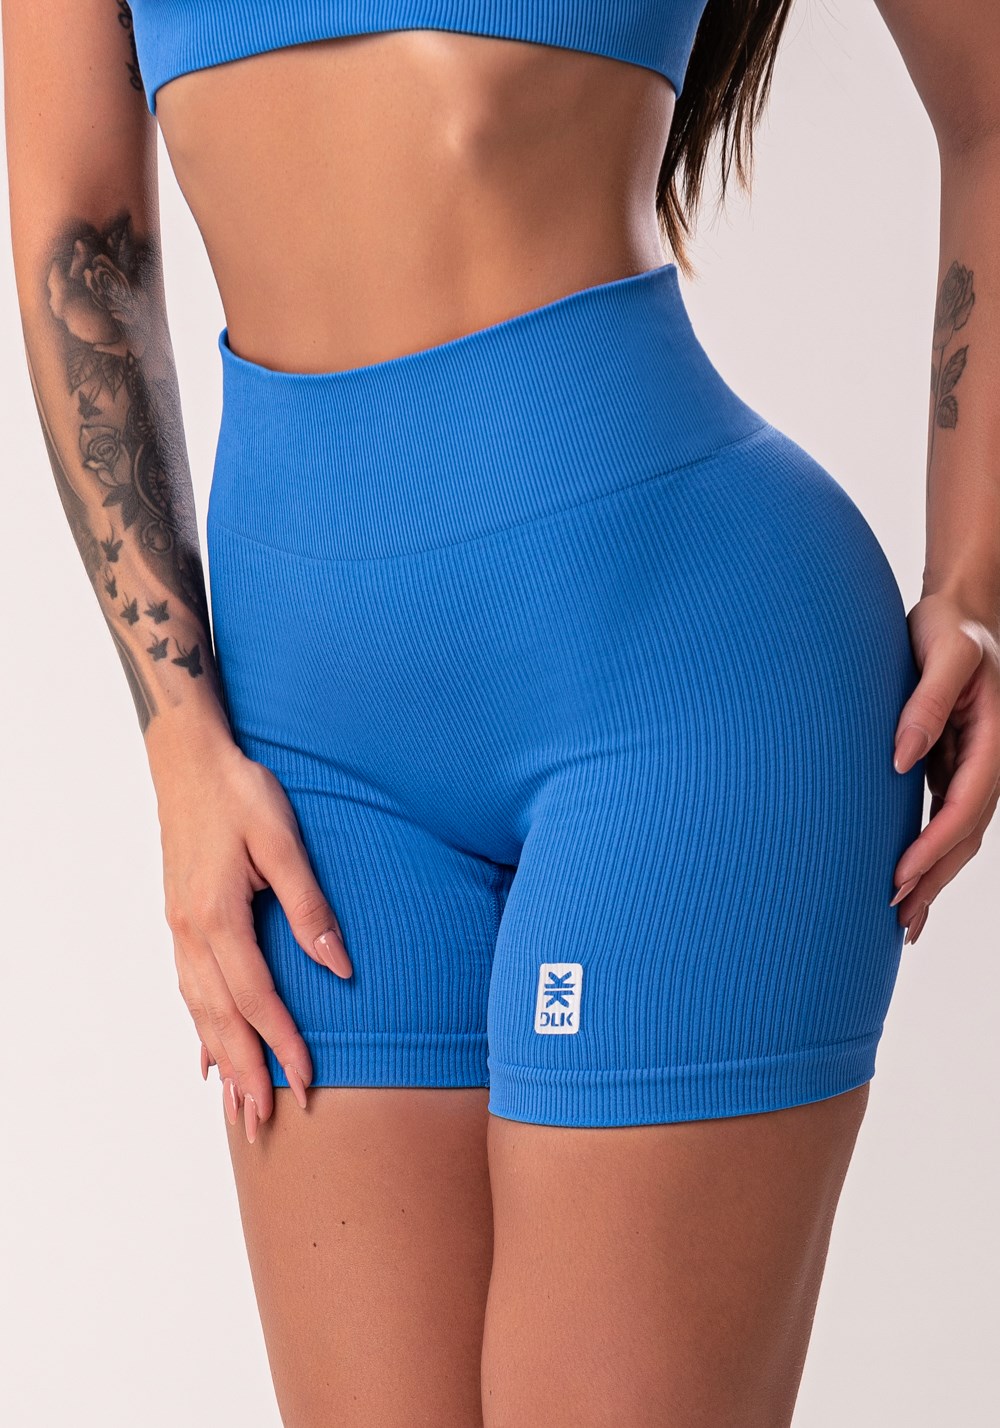 Calça Fitness feminina acetinada Azul - Dama Concept Gym